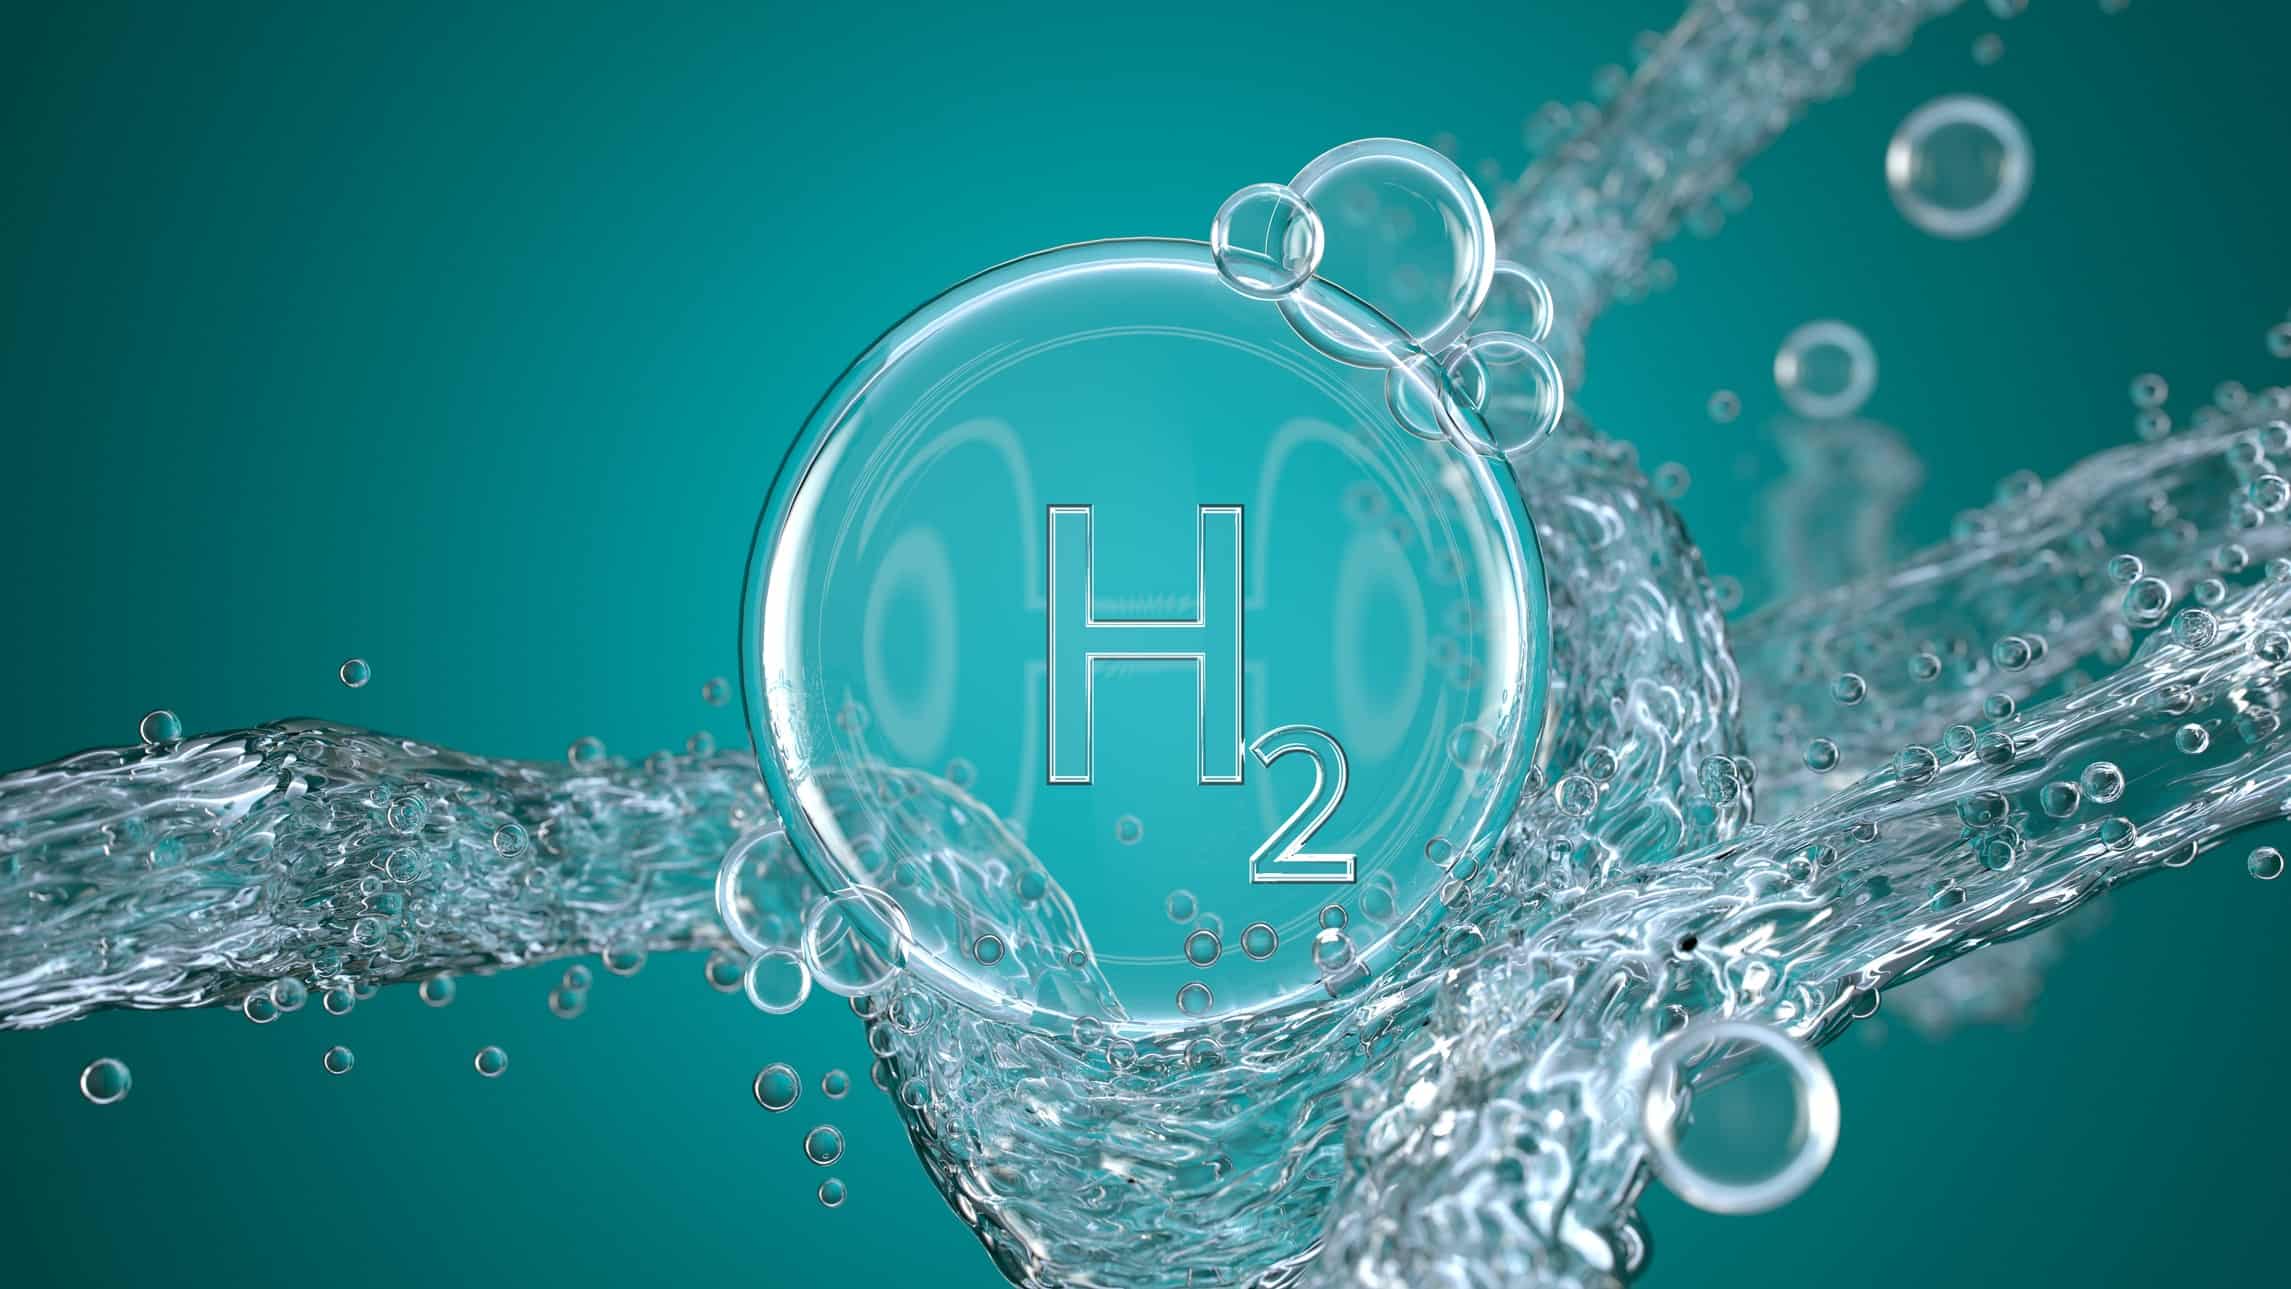 Hydrogen bubble in green